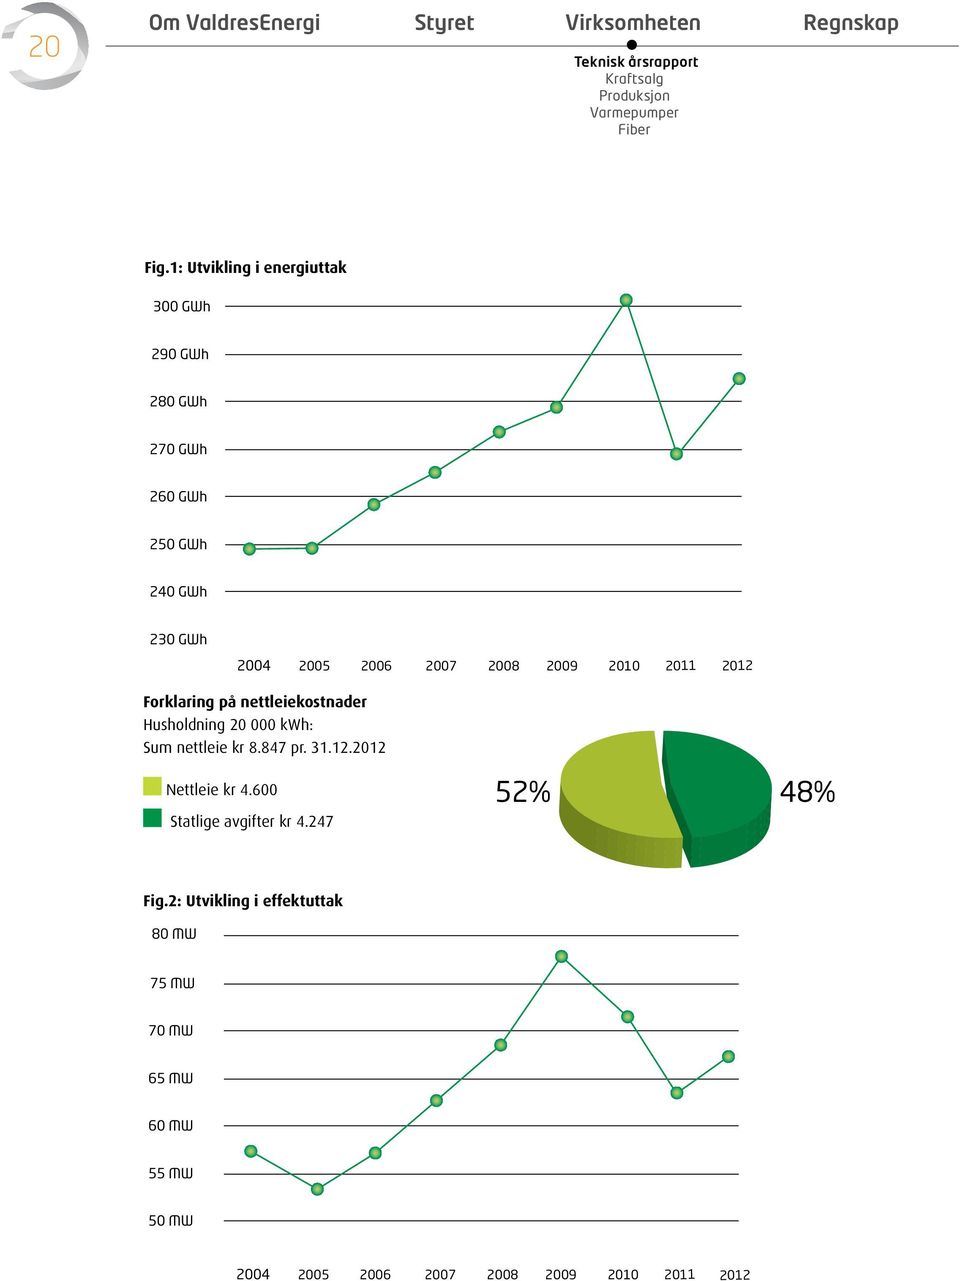 2005 2006 2007 2008 2009 2010 2011 2012 Forklaring på nettleiekostnader Husholdning 20 000 kwh: Sum nettleie kr 8.847 pr. 31.12.2012 52% 48% Nettleie kr 4.